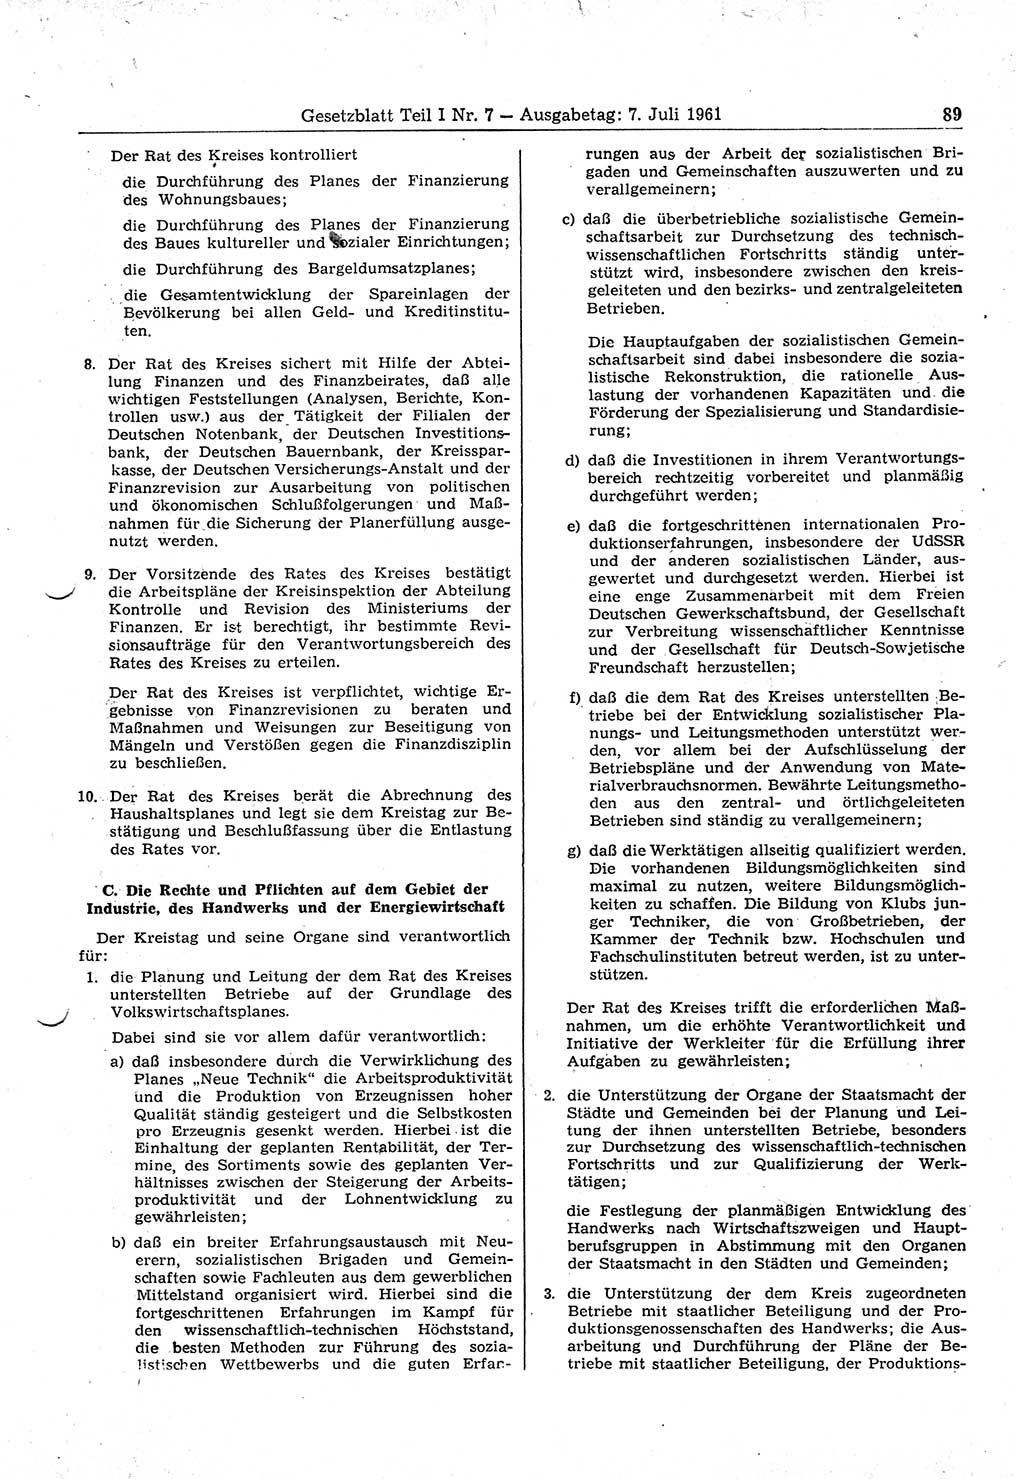 Gesetzblatt (GBl.) der Deutschen Demokratischen Republik (DDR) Teil Ⅰ 1961, Seite 89 (GBl. DDR Ⅰ 1961, S. 89)